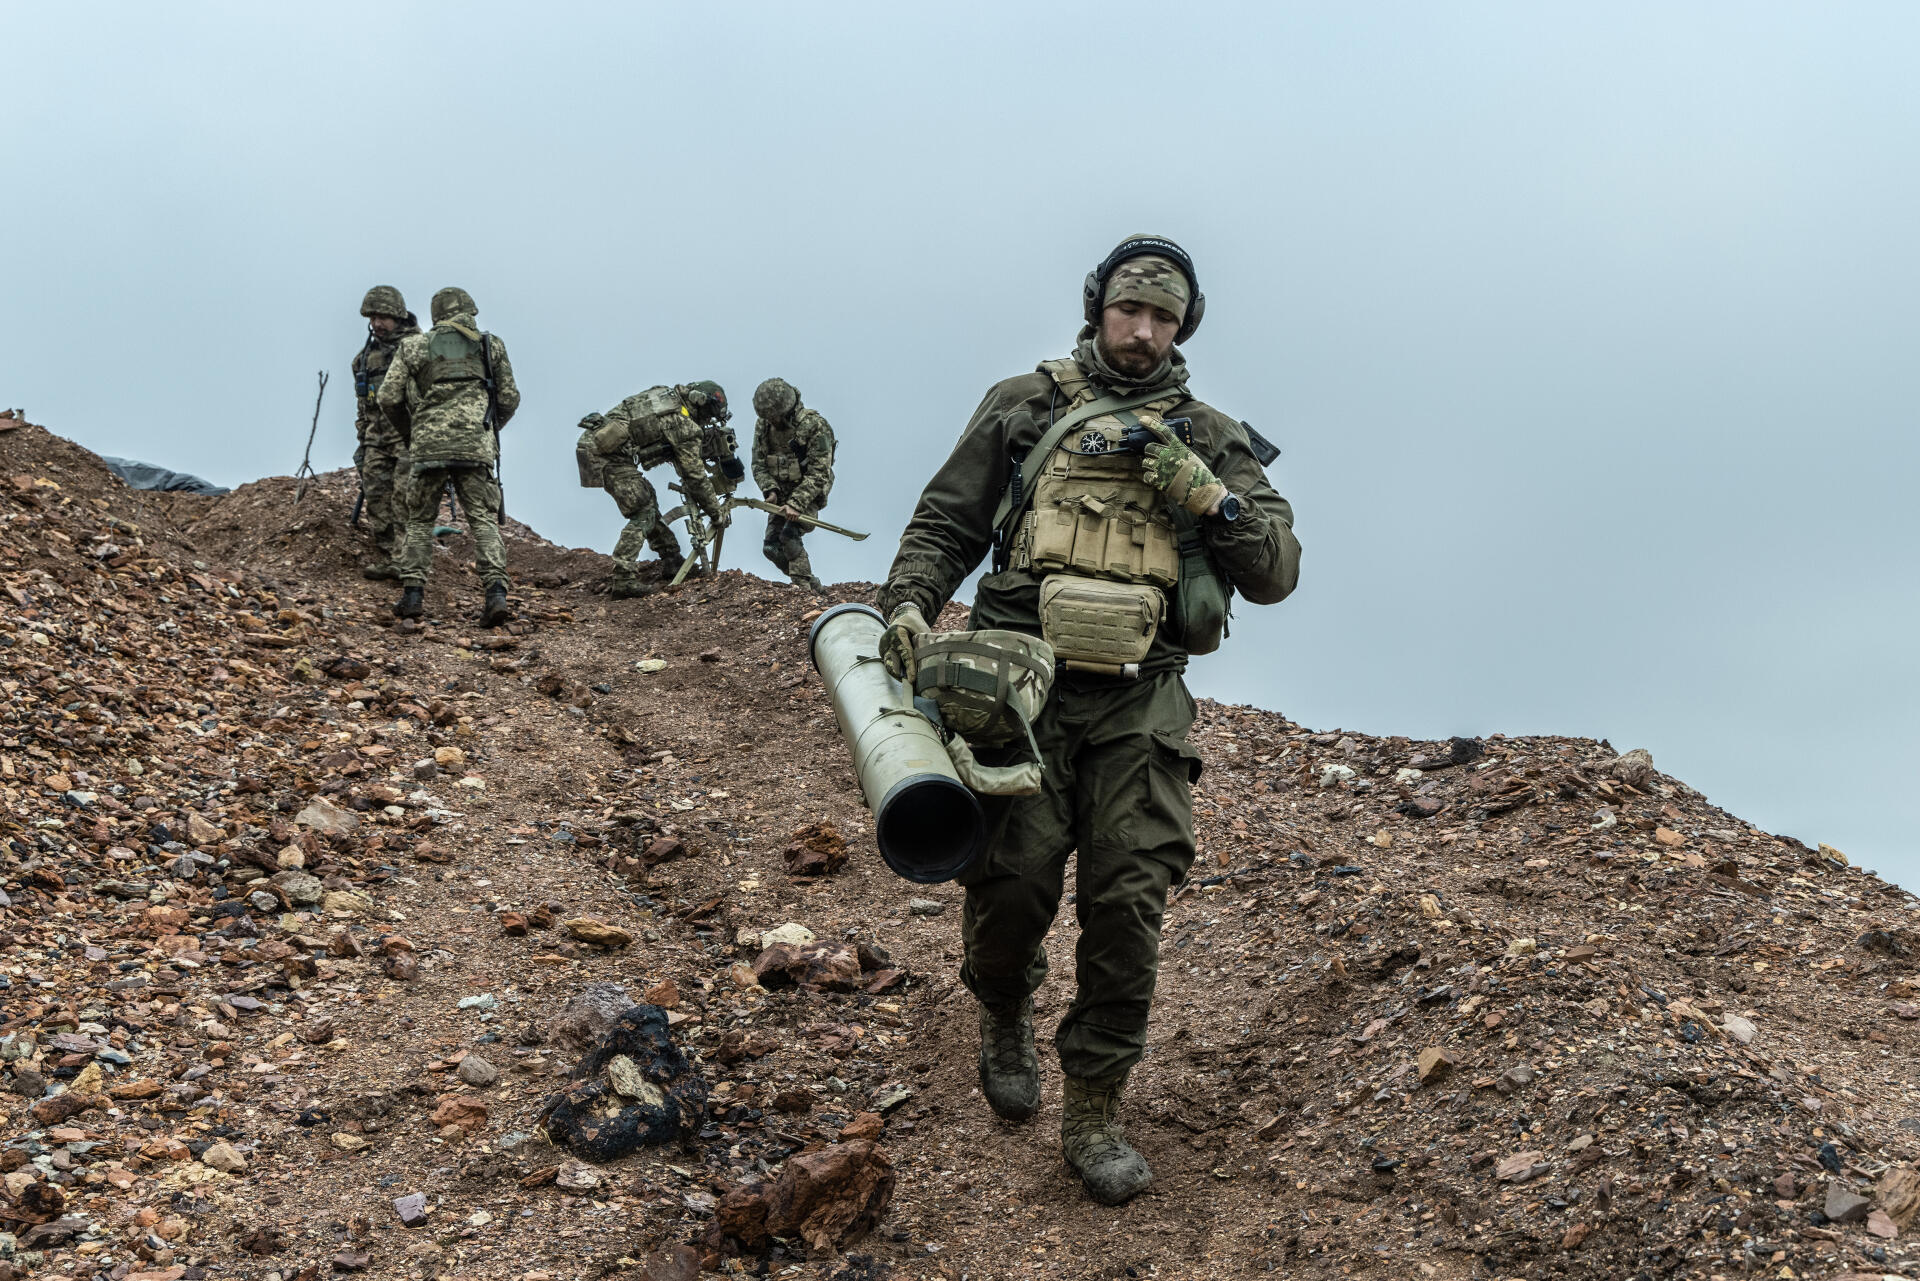 Les soldats d’une unité de régiment d’assaut ont tiré deux missiles antichars Kornet sur une position fortifiée dans les tranchées russes qui leur font face dans la région de Donetsk, dans le Donbass (Ukraine), le 27 novembre 2022.